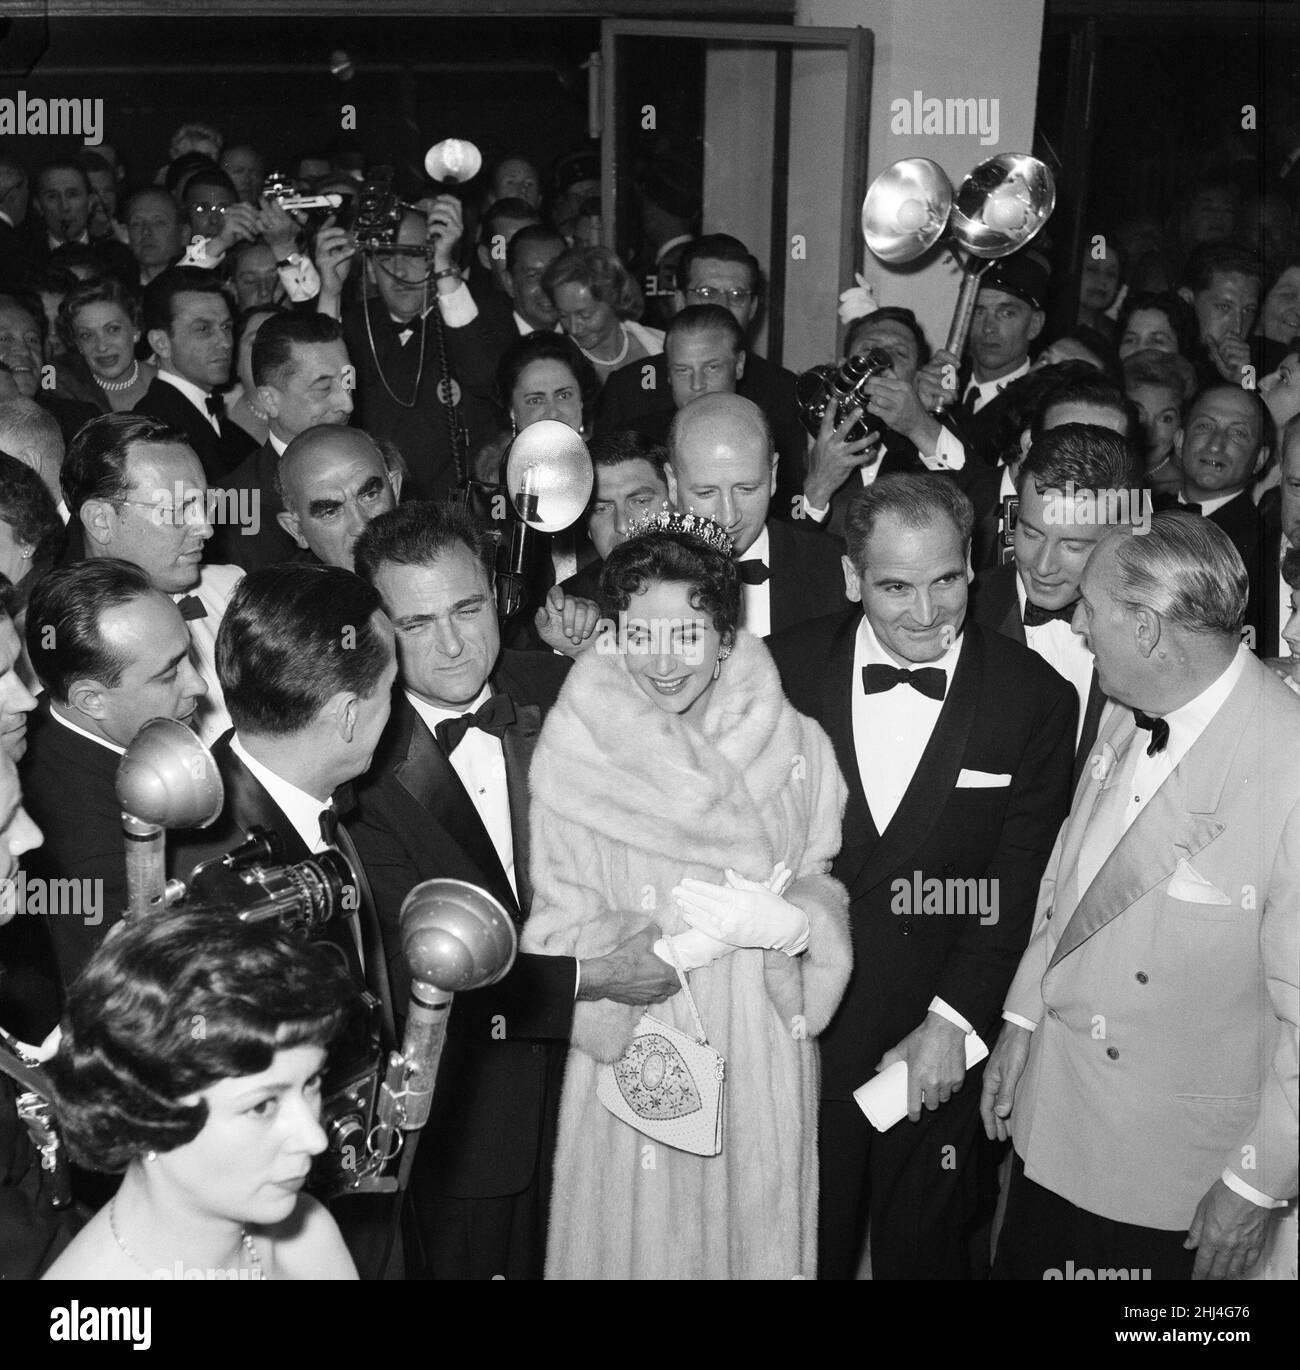 Elizabeth Taylor und ihr Mann, der Filmproduzent Mike Todd, im Bild bei der Eröffnungsnacht der Filmfestspiele von Cannes 1957, wo er in 80 Tagen für neuen Film rund um die Welt wirbt. Cannes, Frankreich, 6th. Mai 1957. Stockfoto